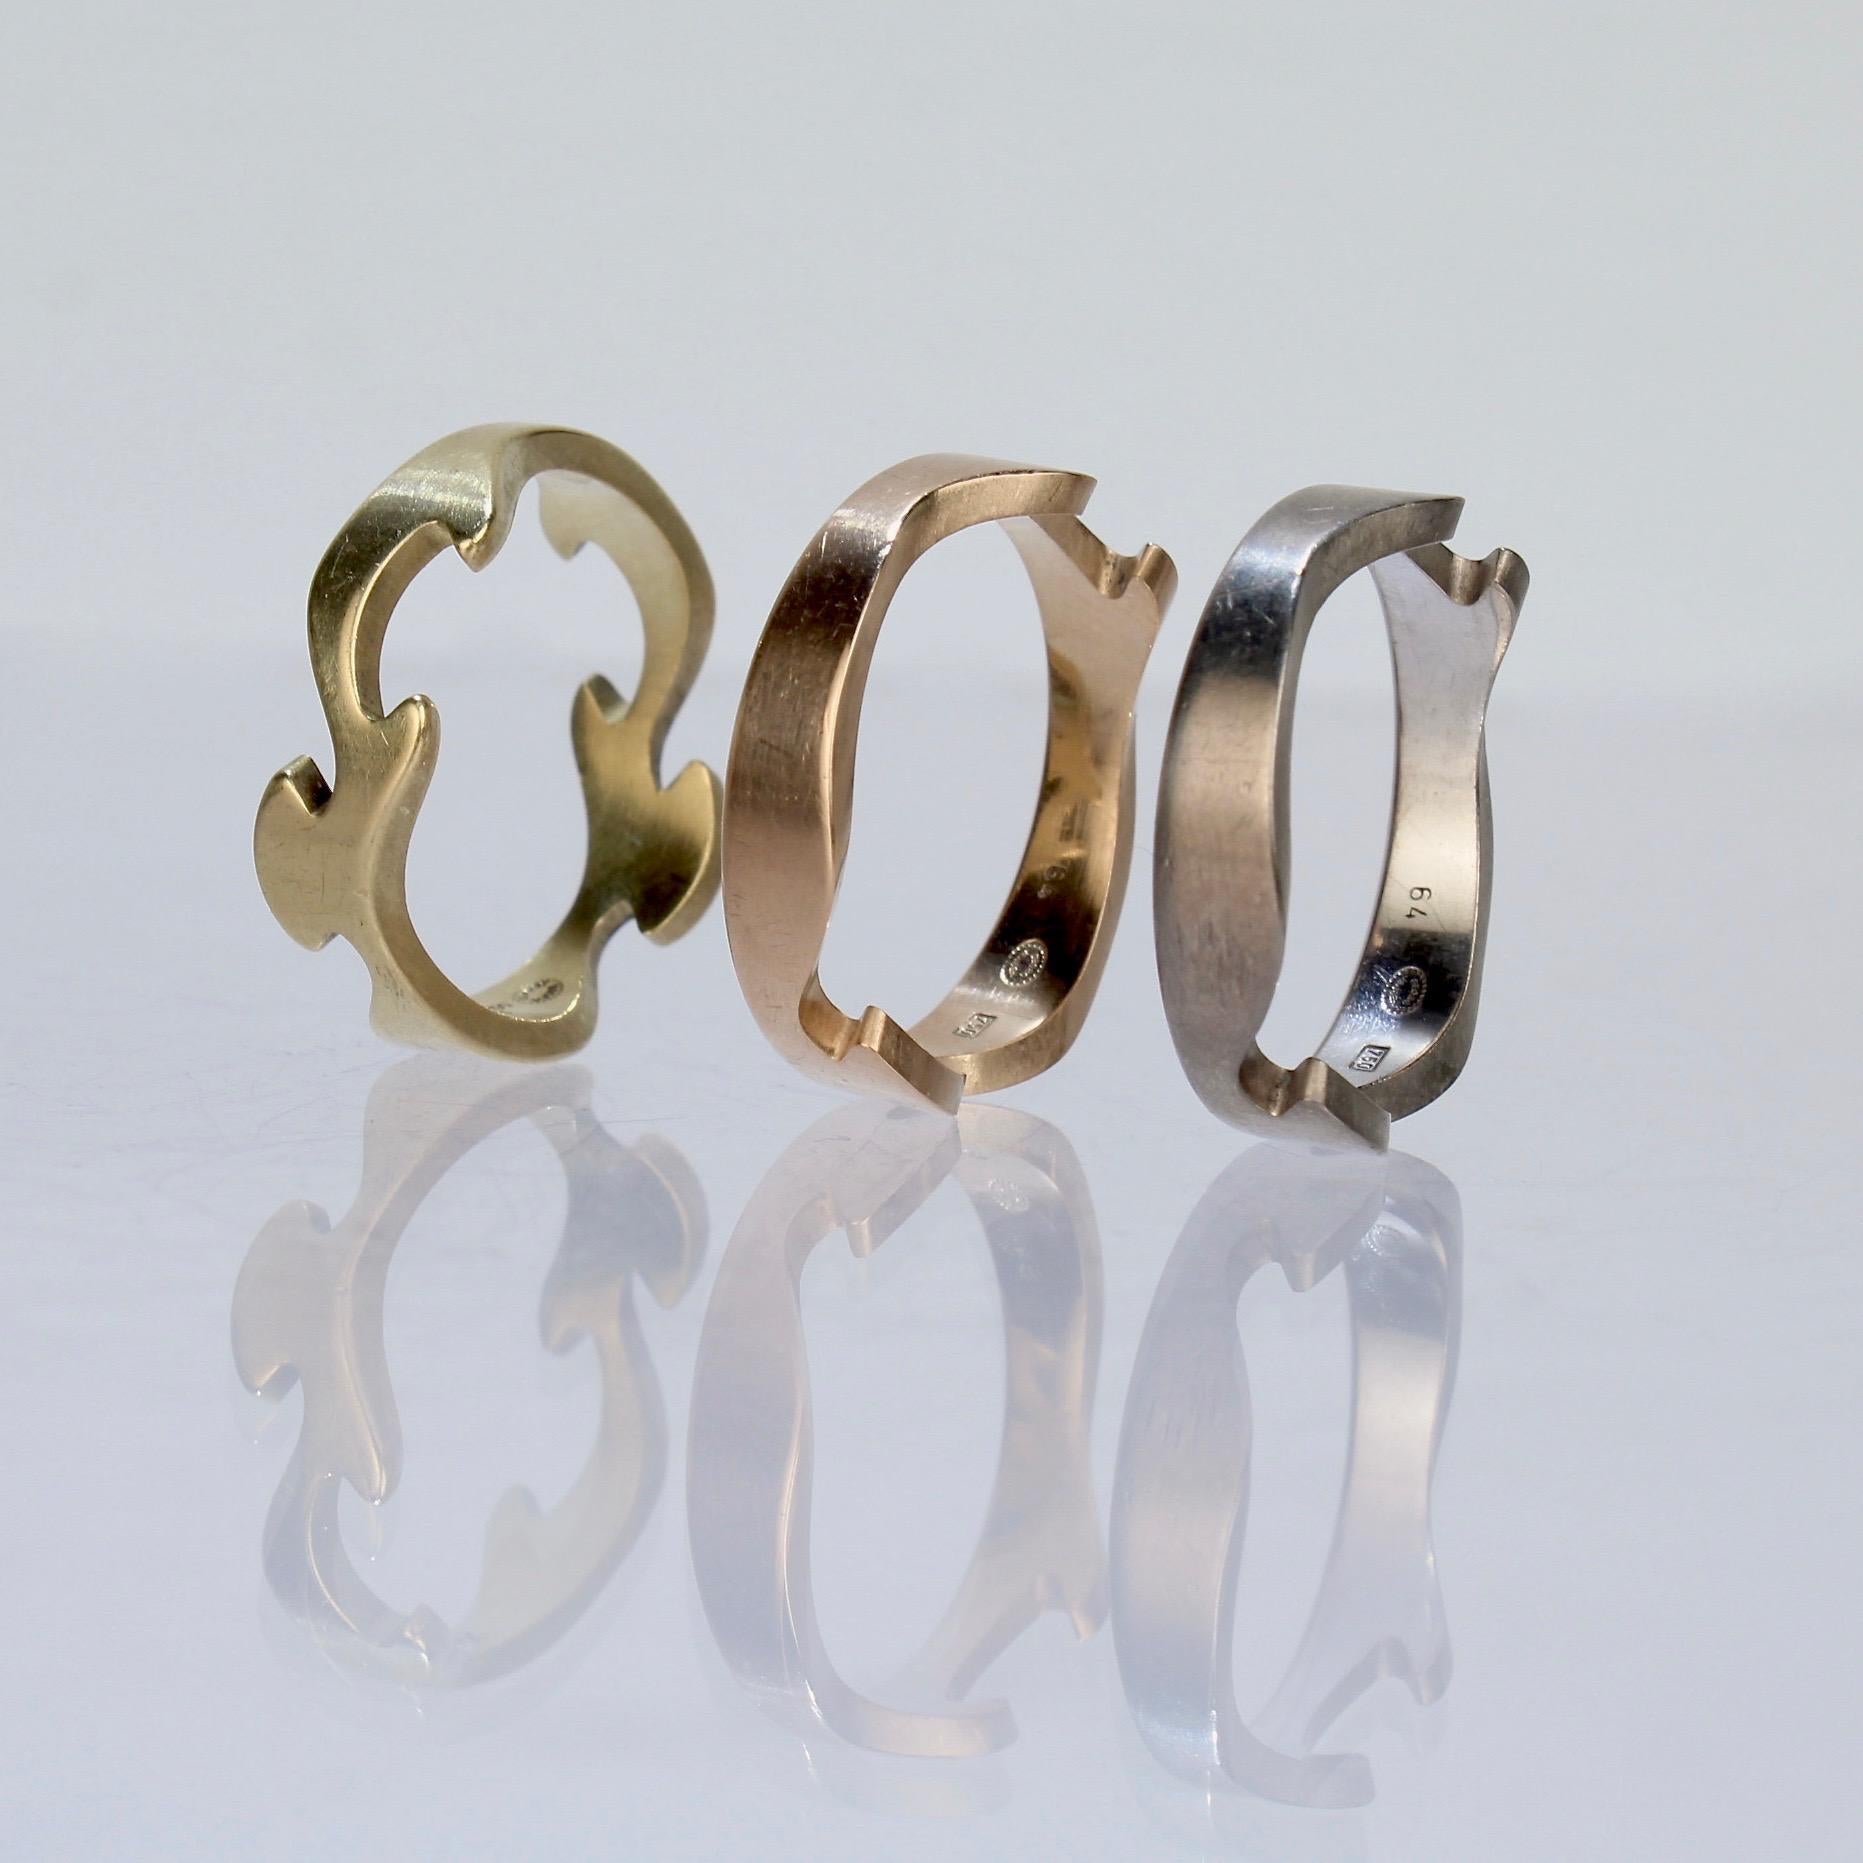 Modernist 18 Karat Tri-Color Gold Fusion Ring by Nina Koppel for Georg Jensen